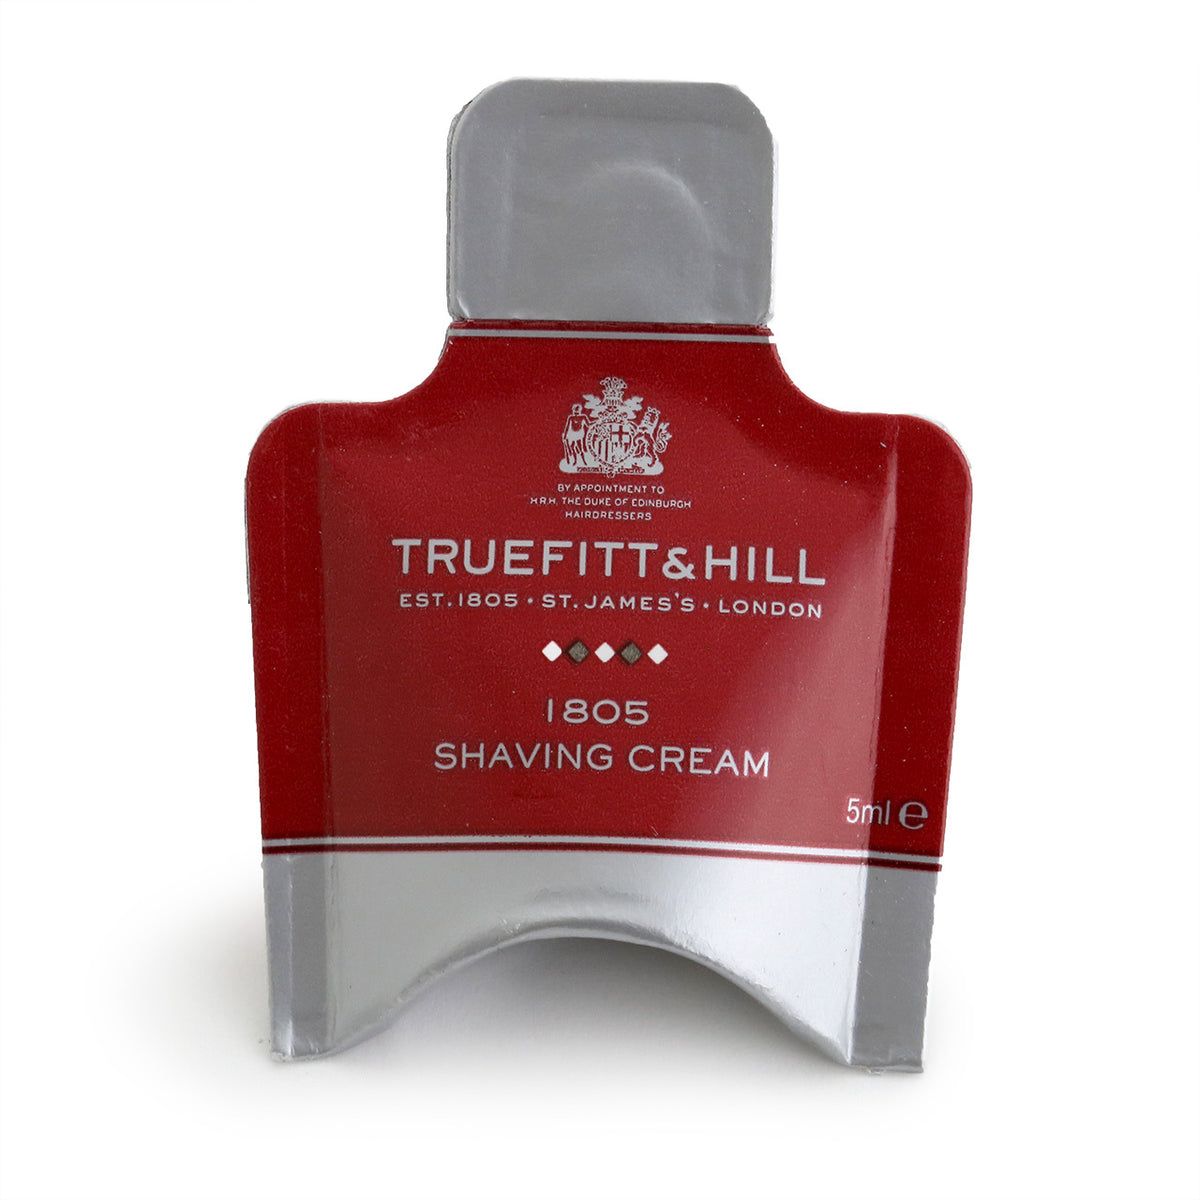 Truefitt &amp; Hill Shaving Cream Sample 5ml, 1805